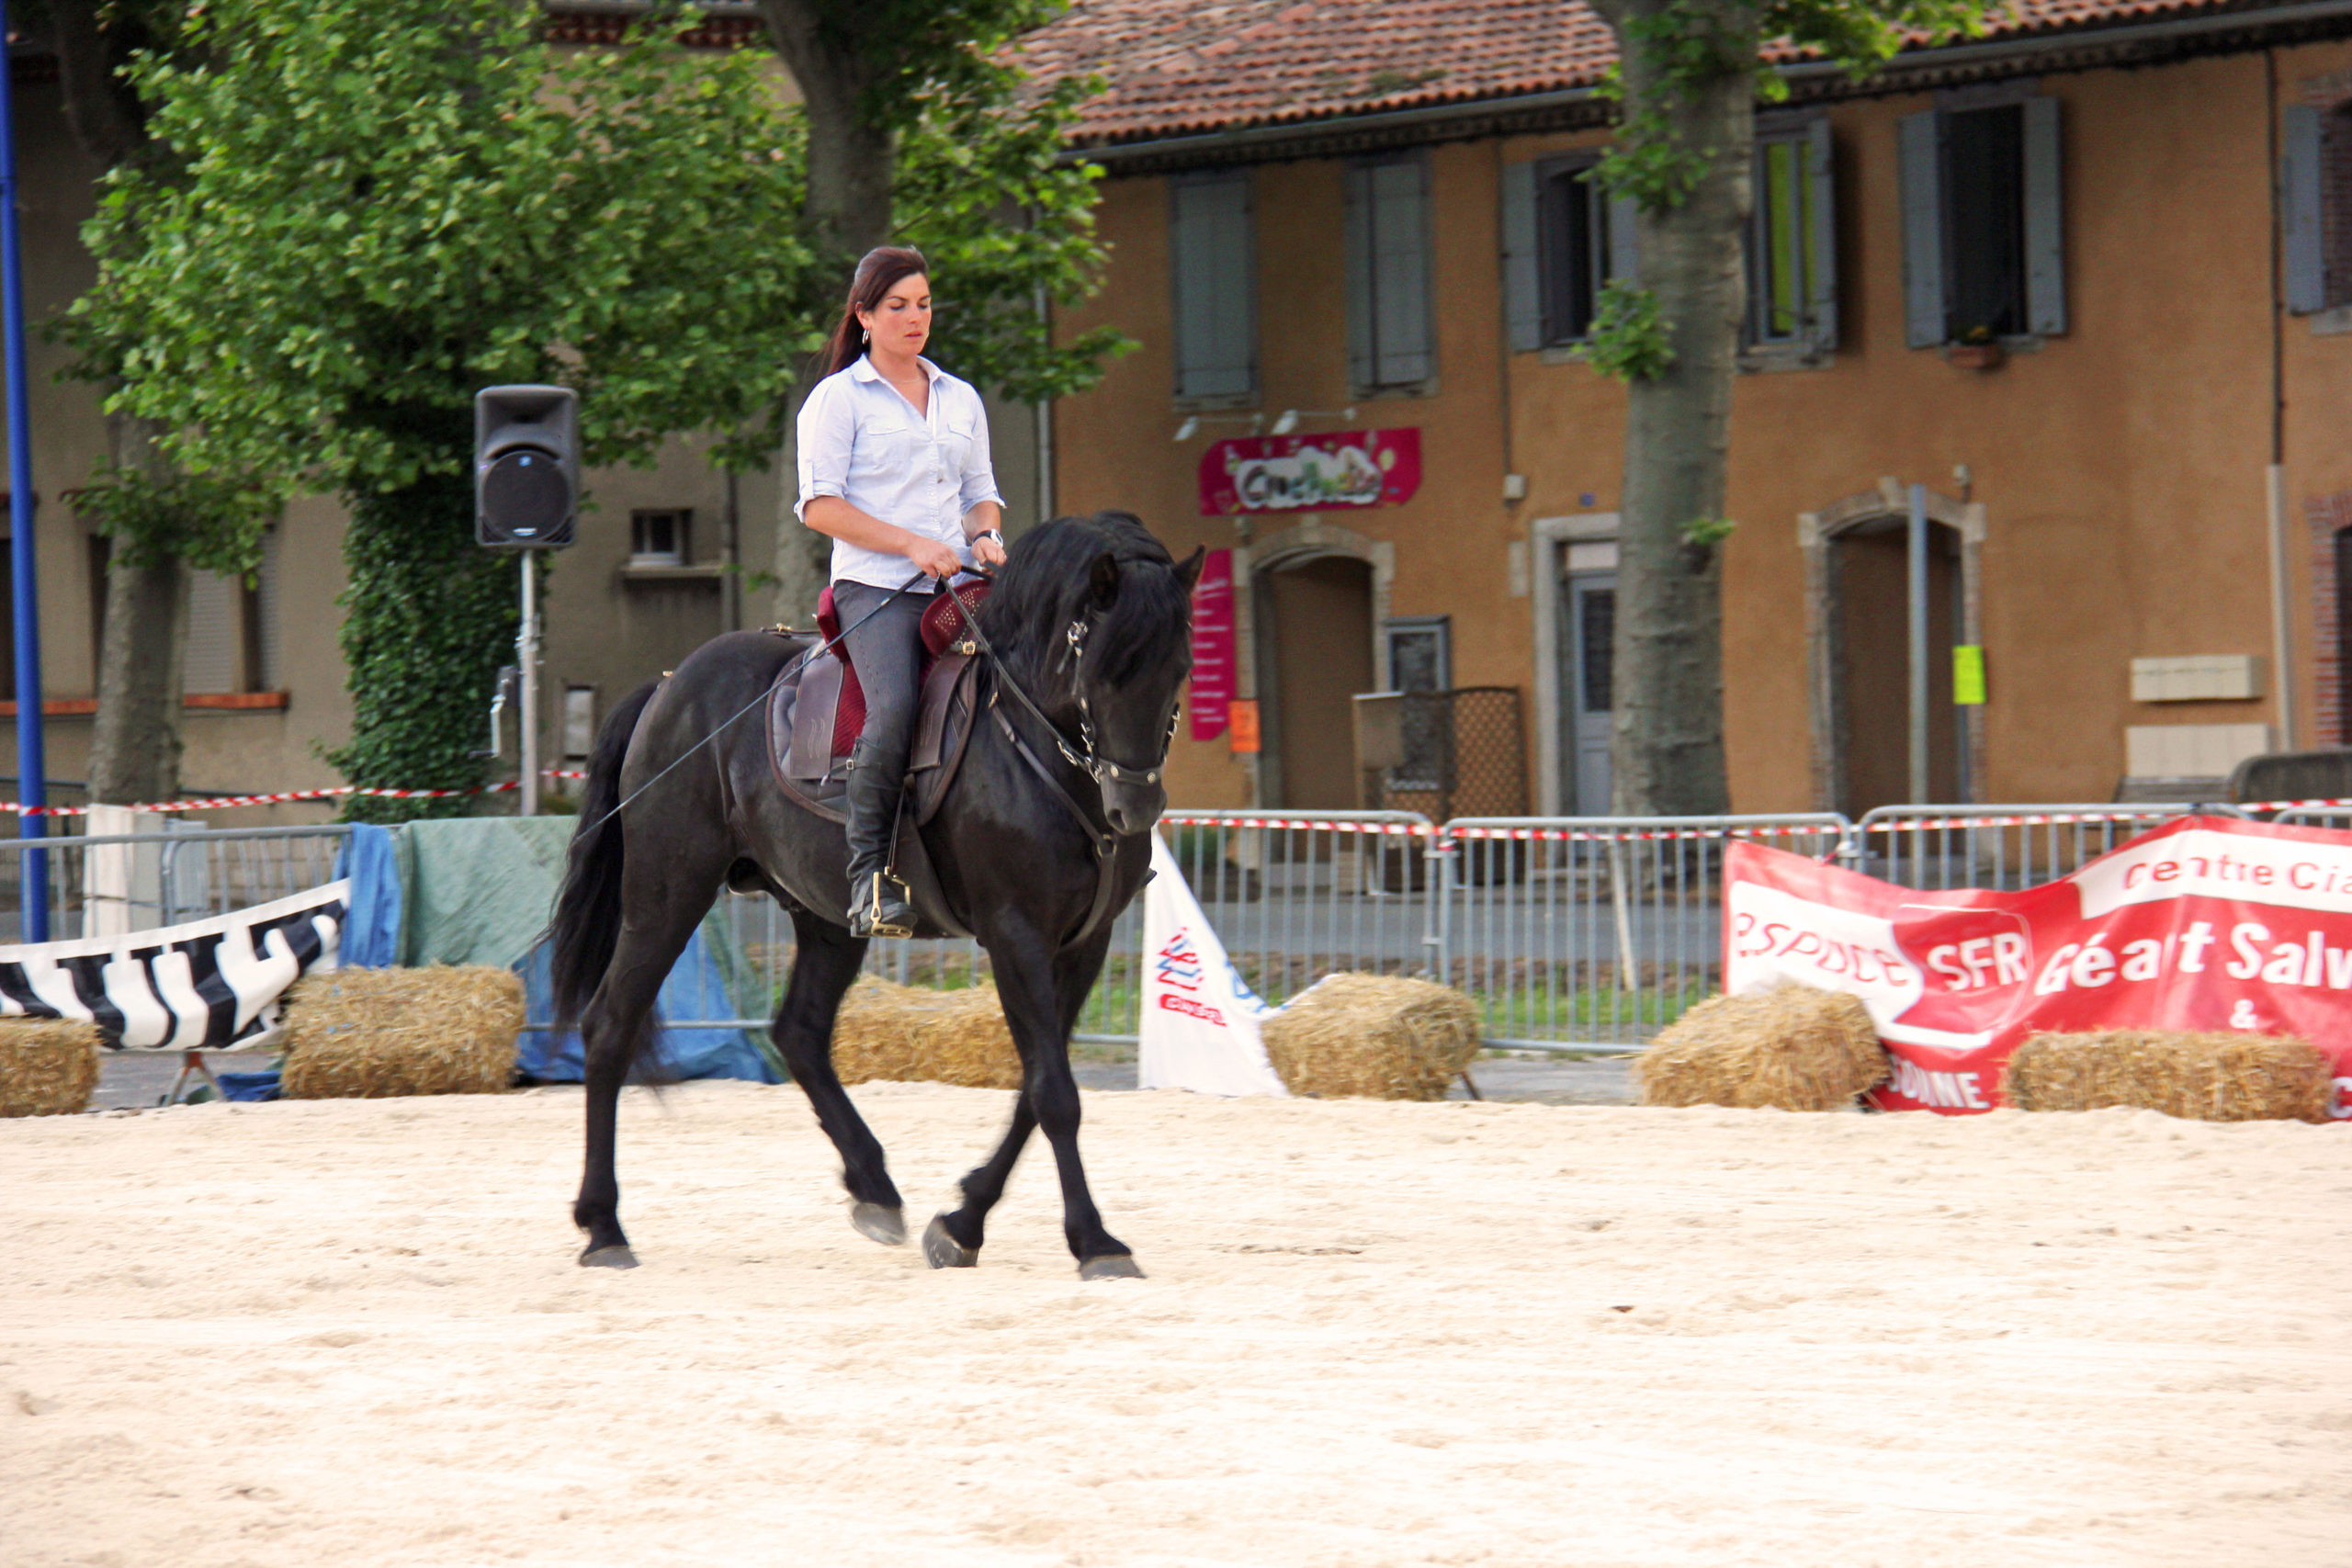 fete du cheval, Quillan : Fete du cheval 2015, VisitesVirtuelles.123.fr